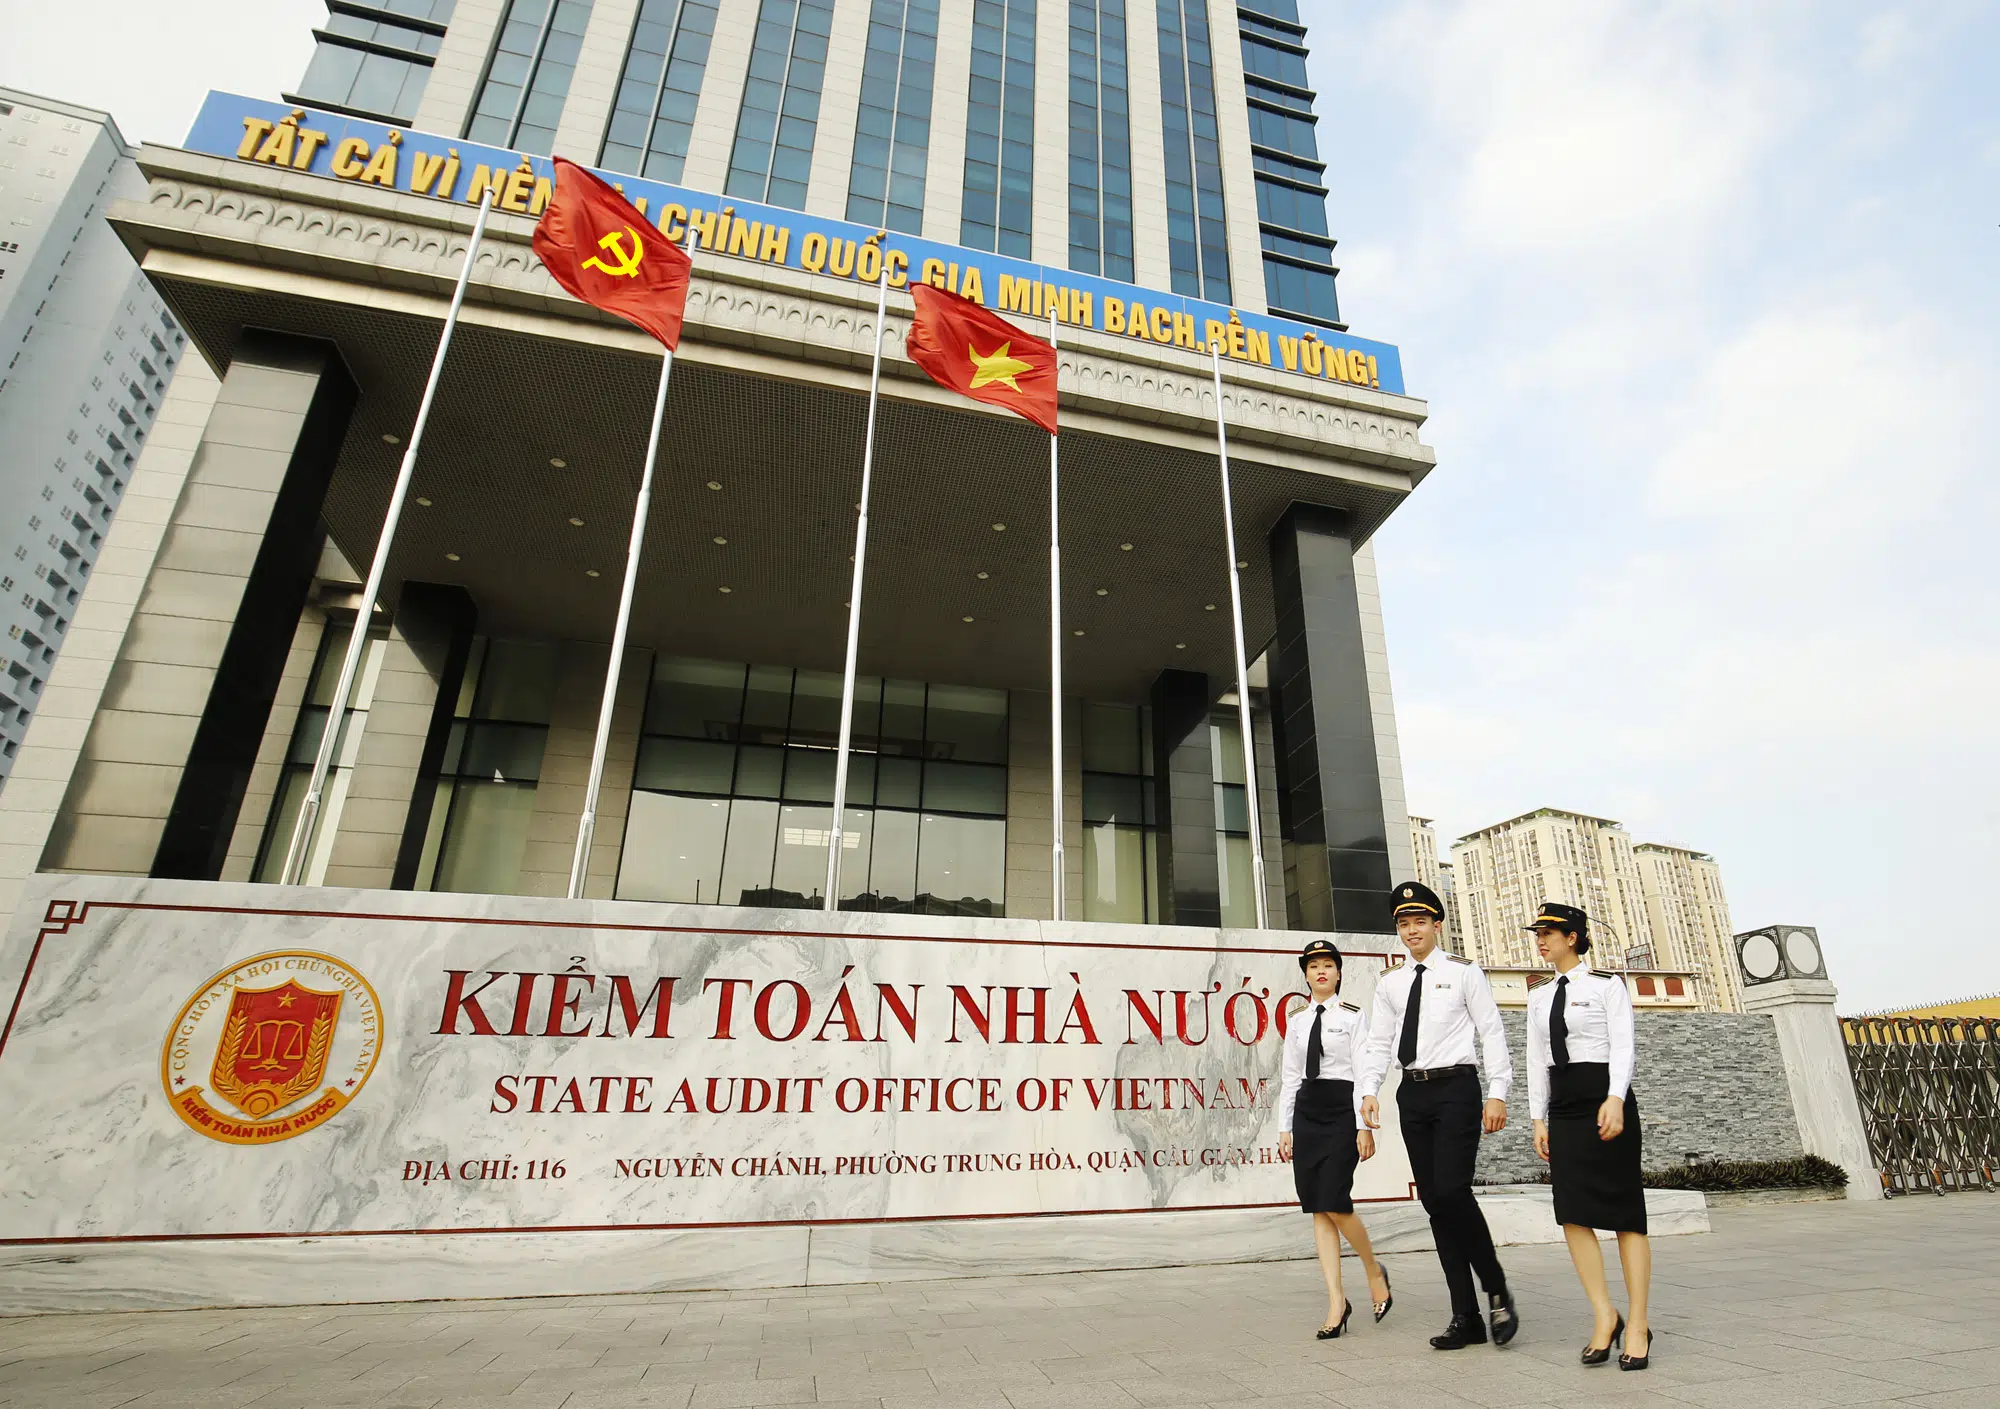 Bộ máy nhà nước Cộng hòa xã hội chủ nghĩa Việt Nam